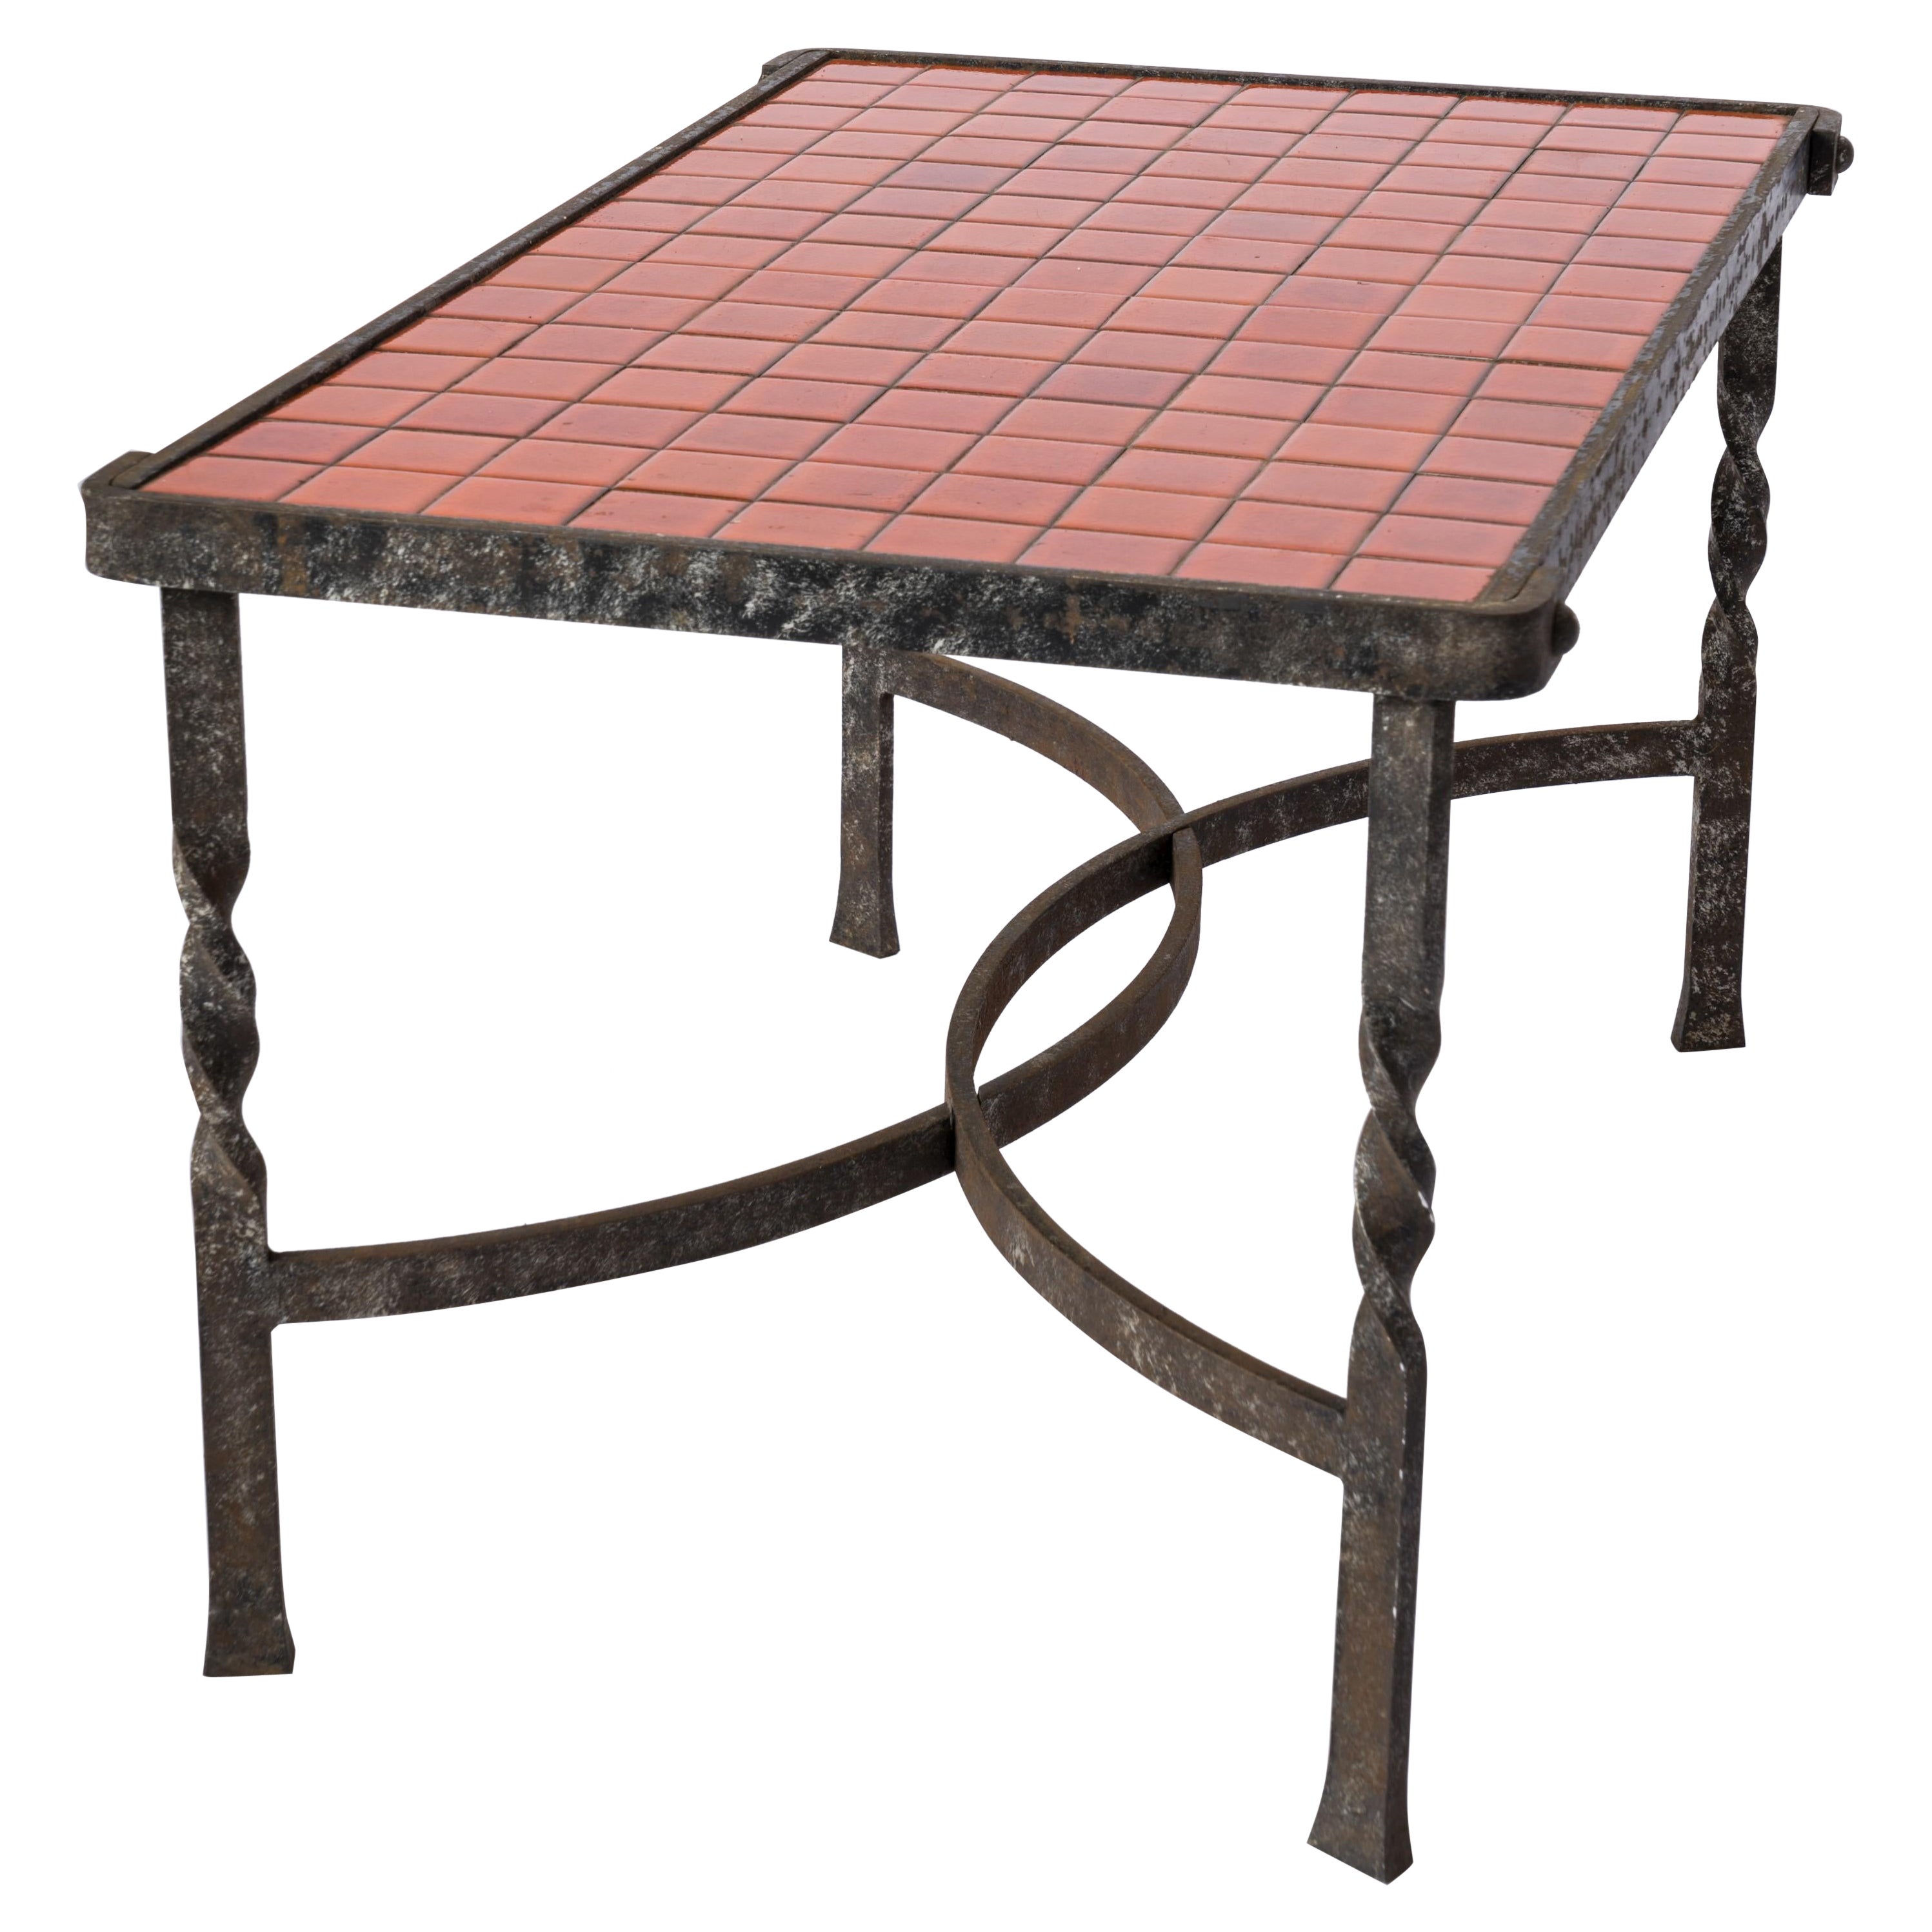 Table basse en céramique avec structure de pieds en ferronerie d'art.  Remarquable patine argentée sur le fer.  Elégants motifs 